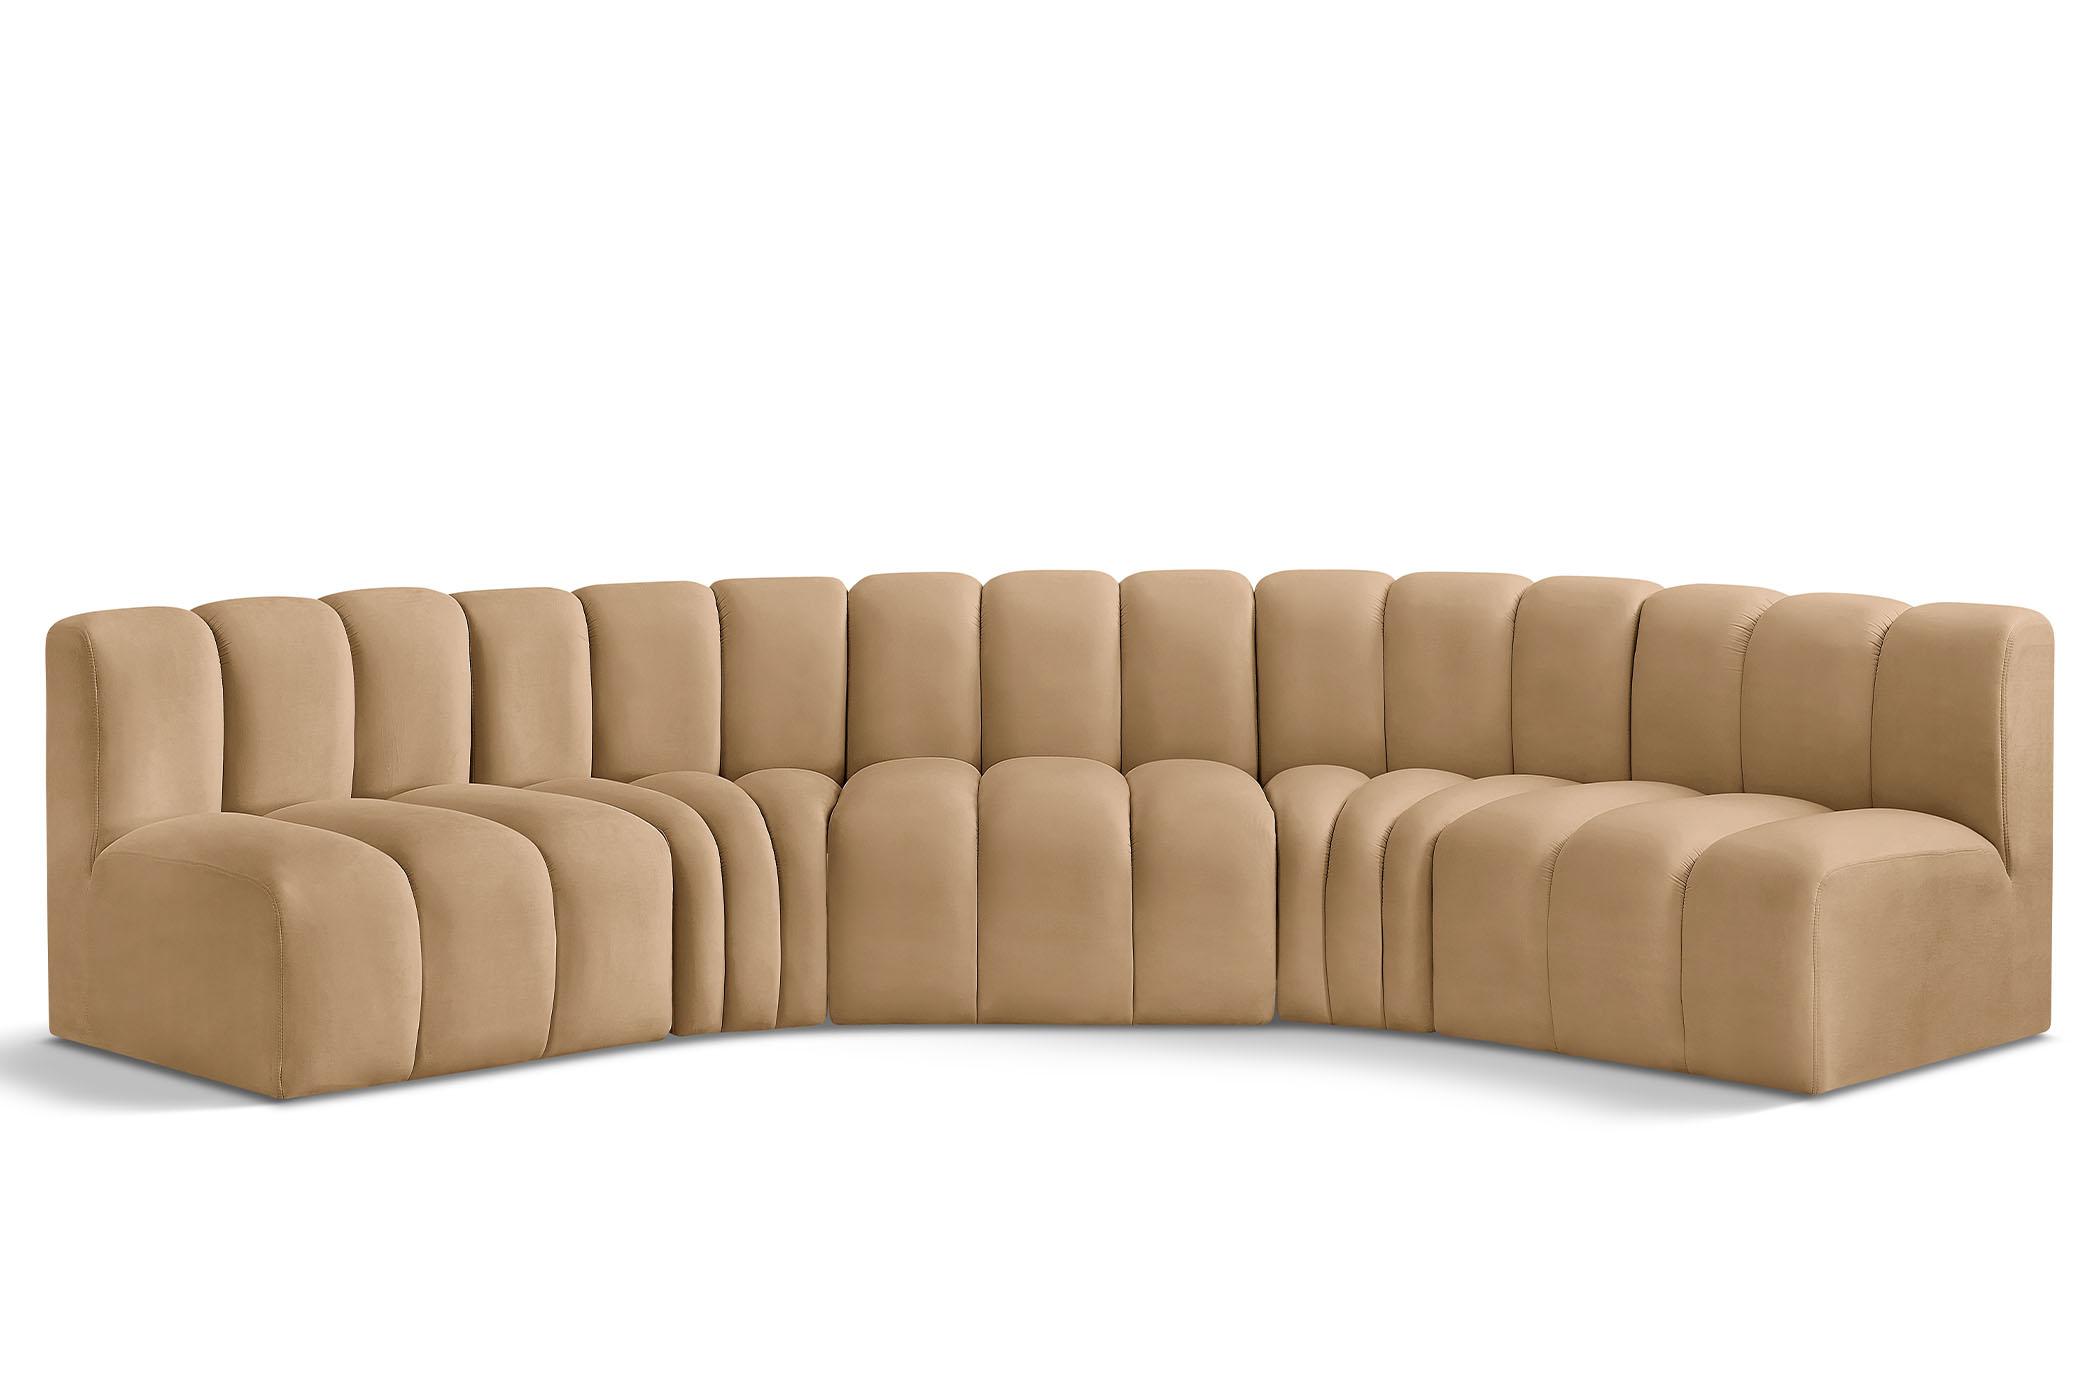 Contemporary, Modern Modular Sectional Sofa ARC 103Camel-S5A 103Camel-S5A in Camel Velvet